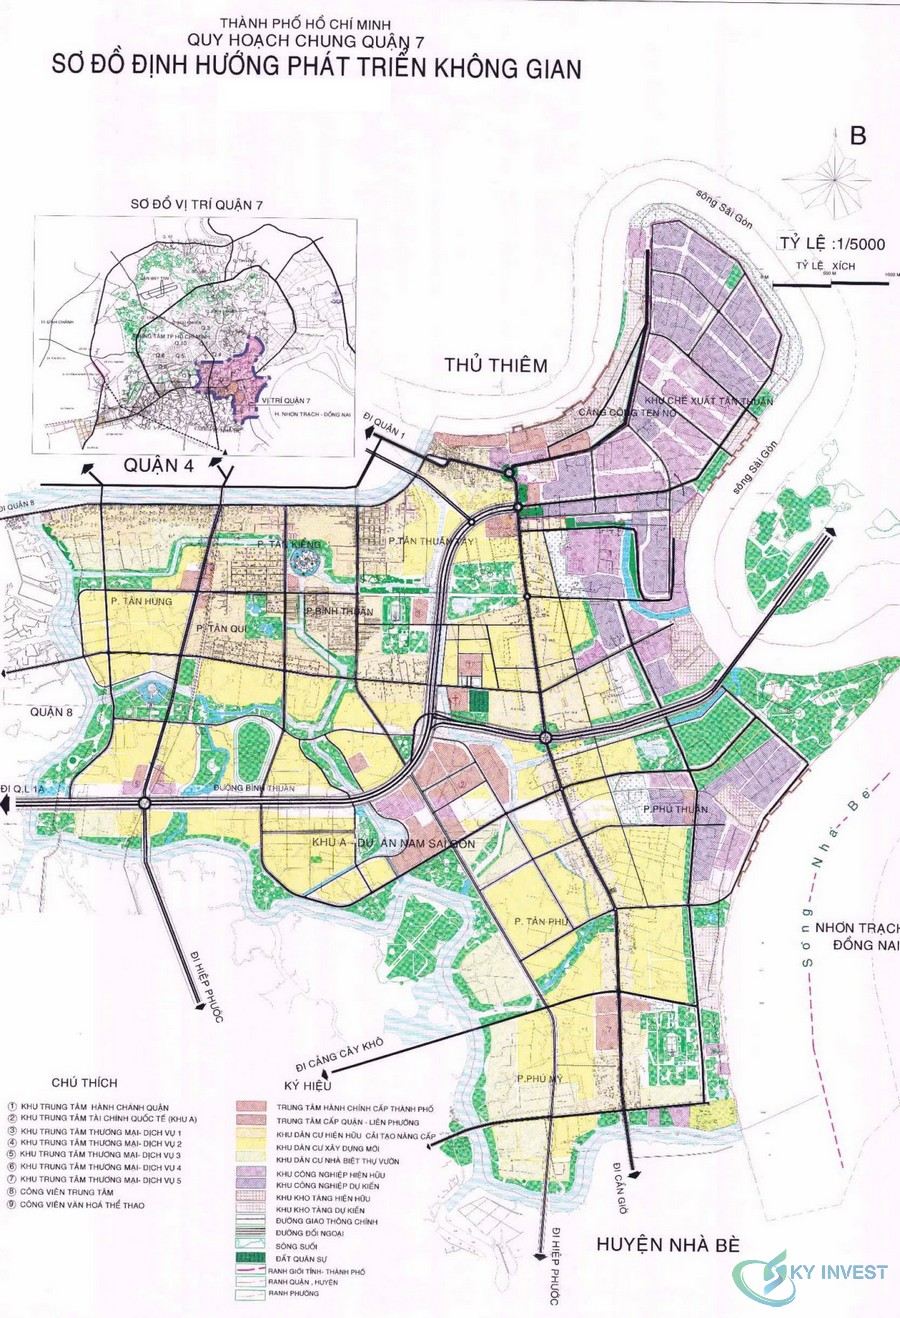 Quy hoạch phát triển không gian quận 7